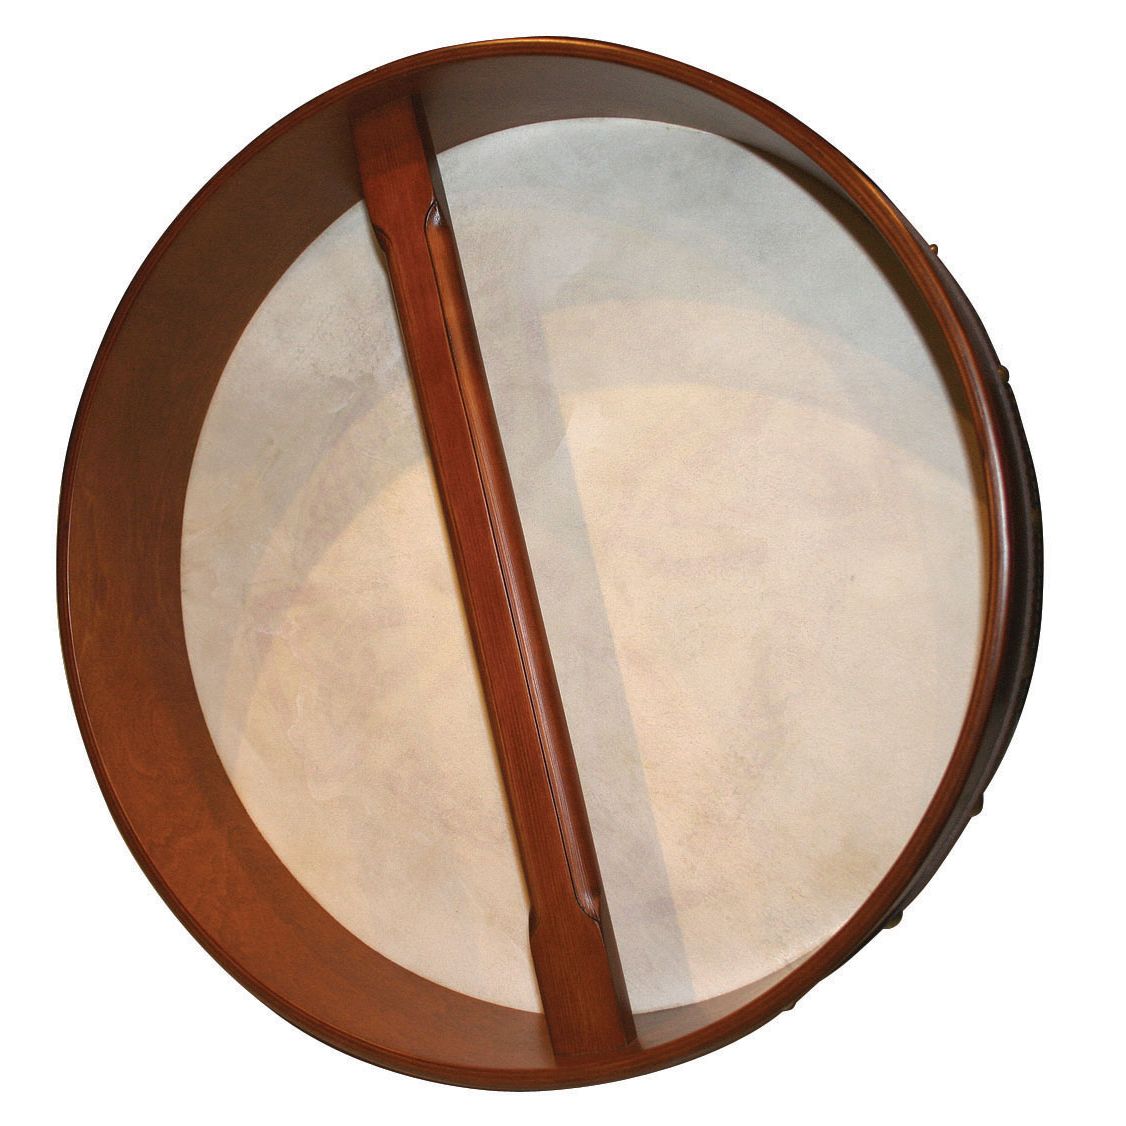 Bodhran aus Irland, irische Rahmentrommel. Durchmesser: 47 cm